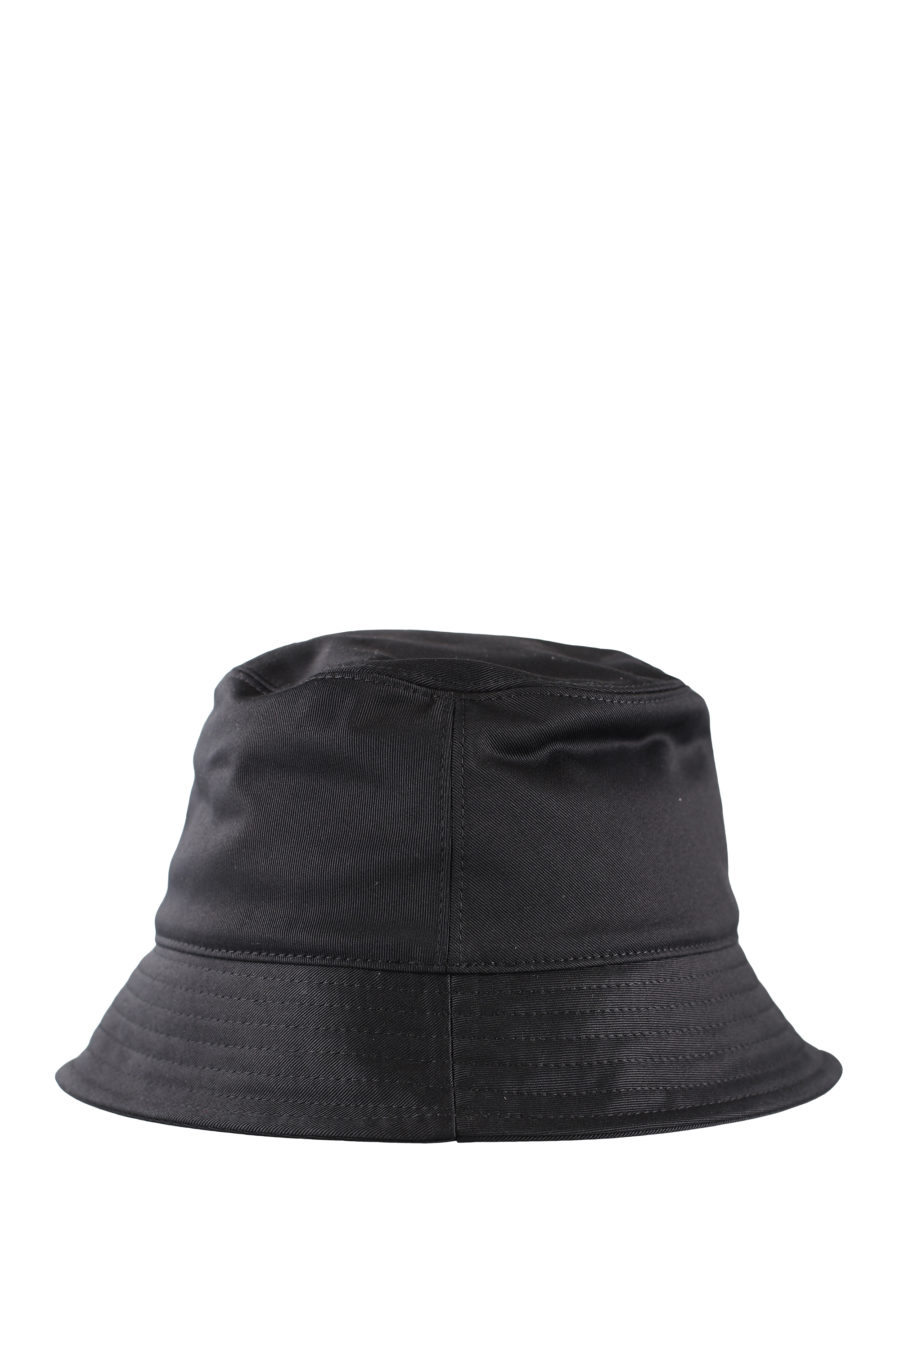 Sombrero de pescador negro con logo "icon" - IMG 0071